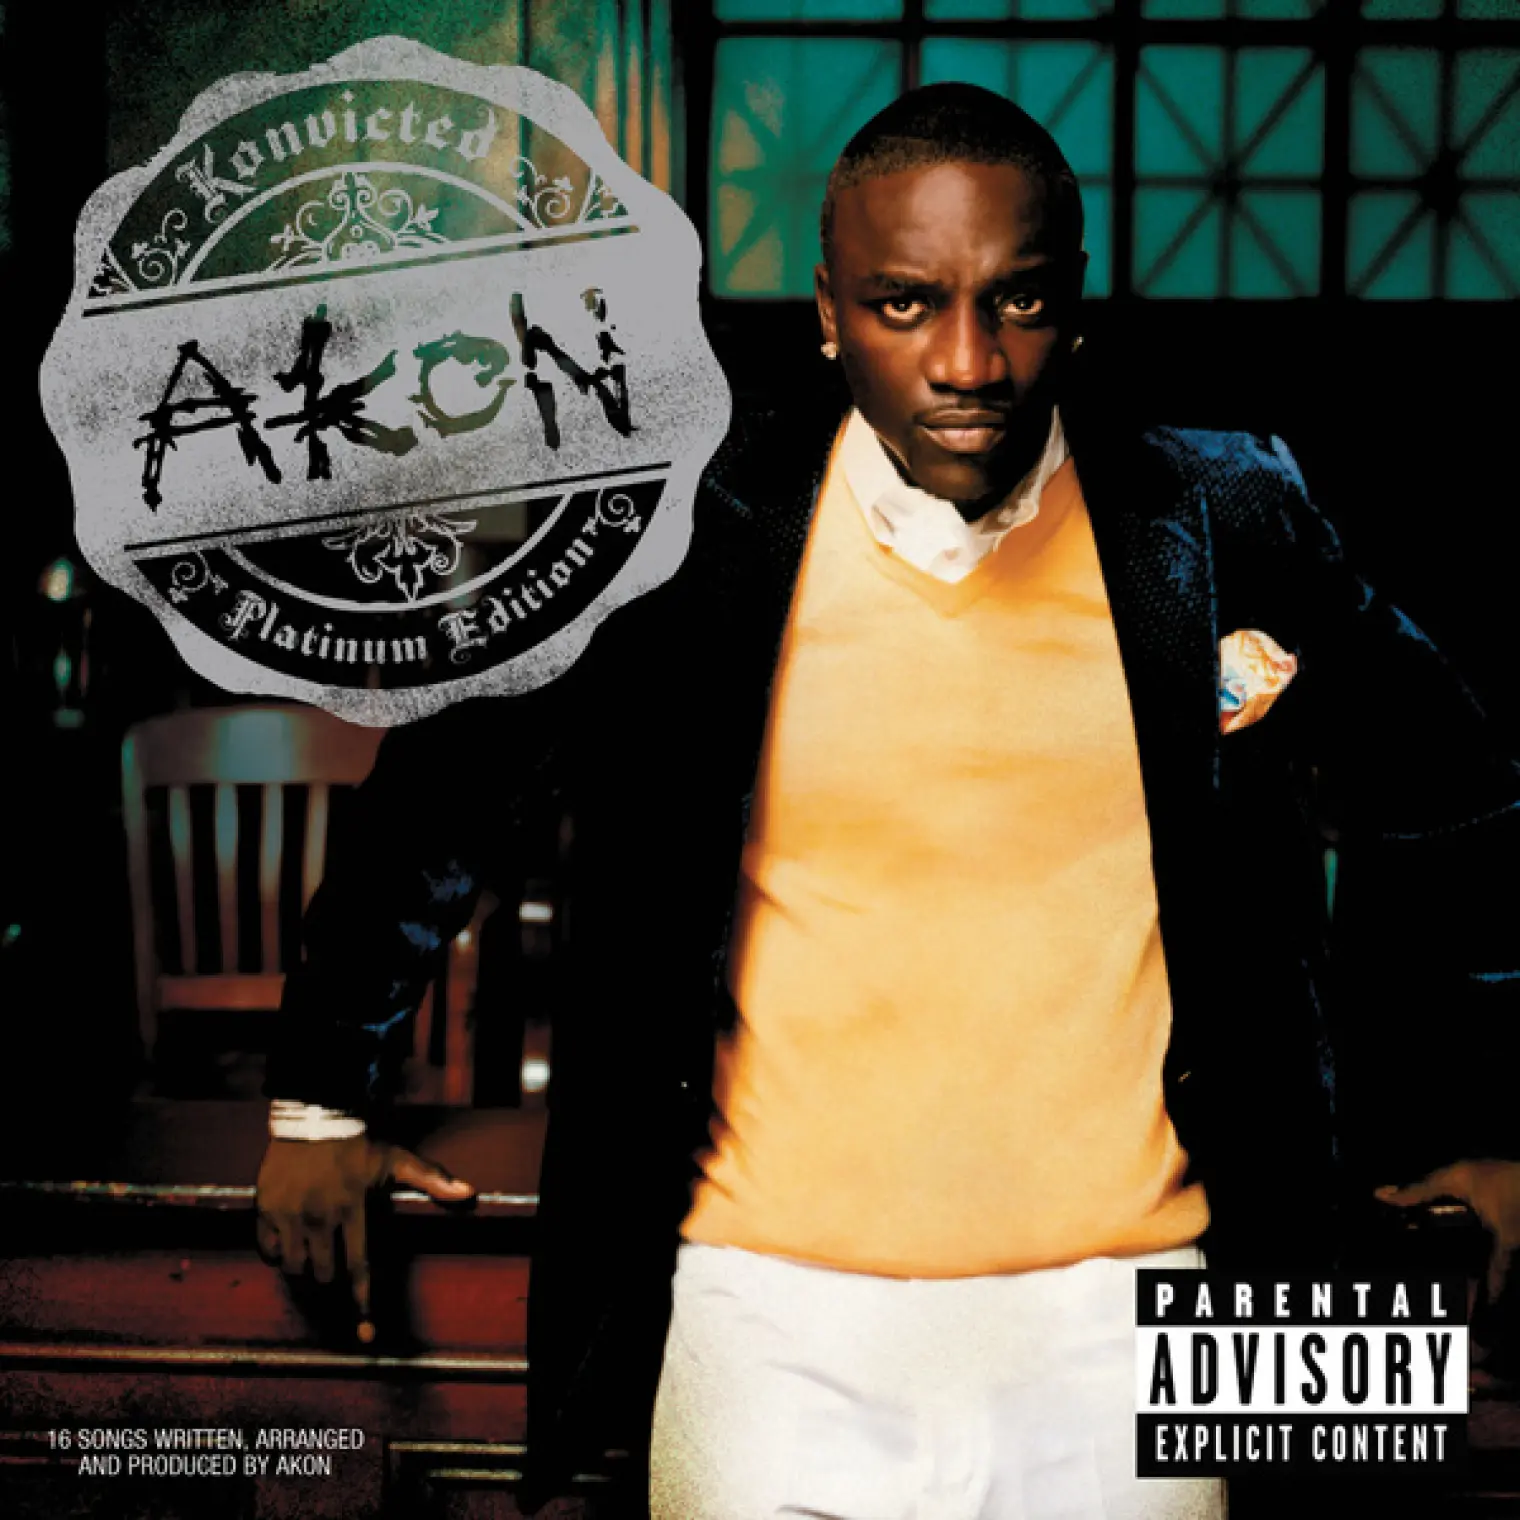 Konvicted -  Akon 